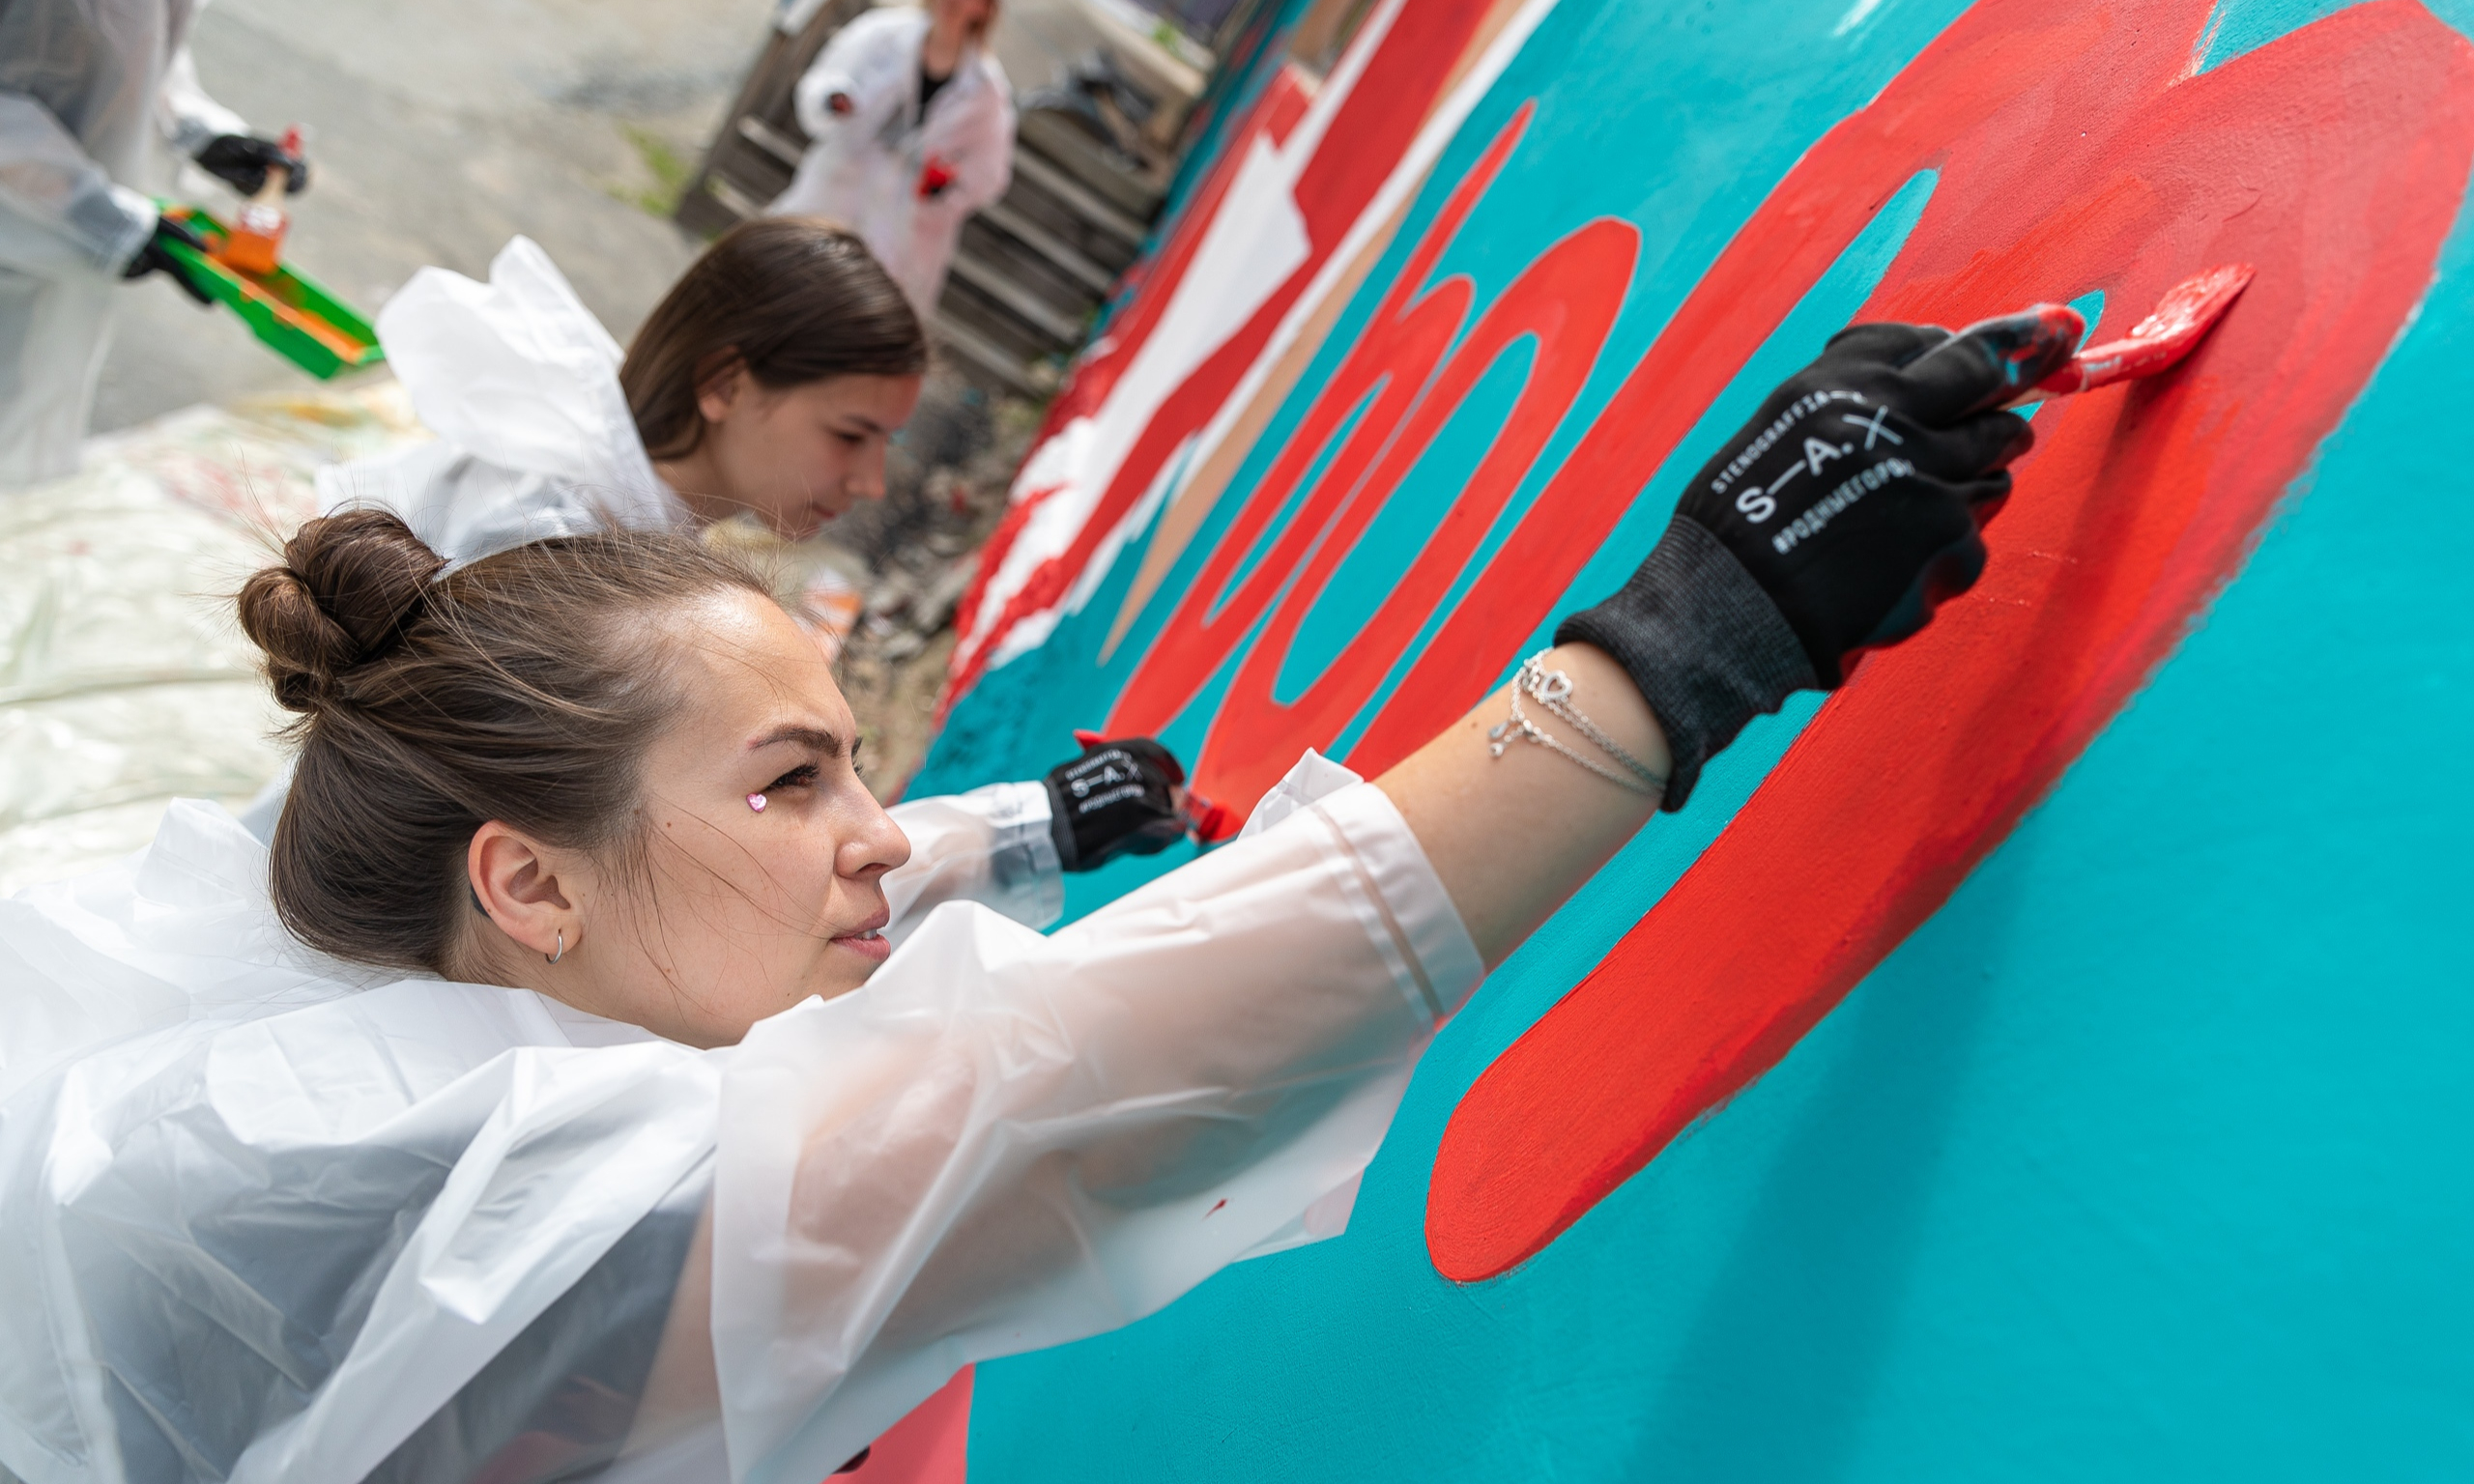 Около 100 граффити из Екатеринбурга попали в мировую презентацию от Google